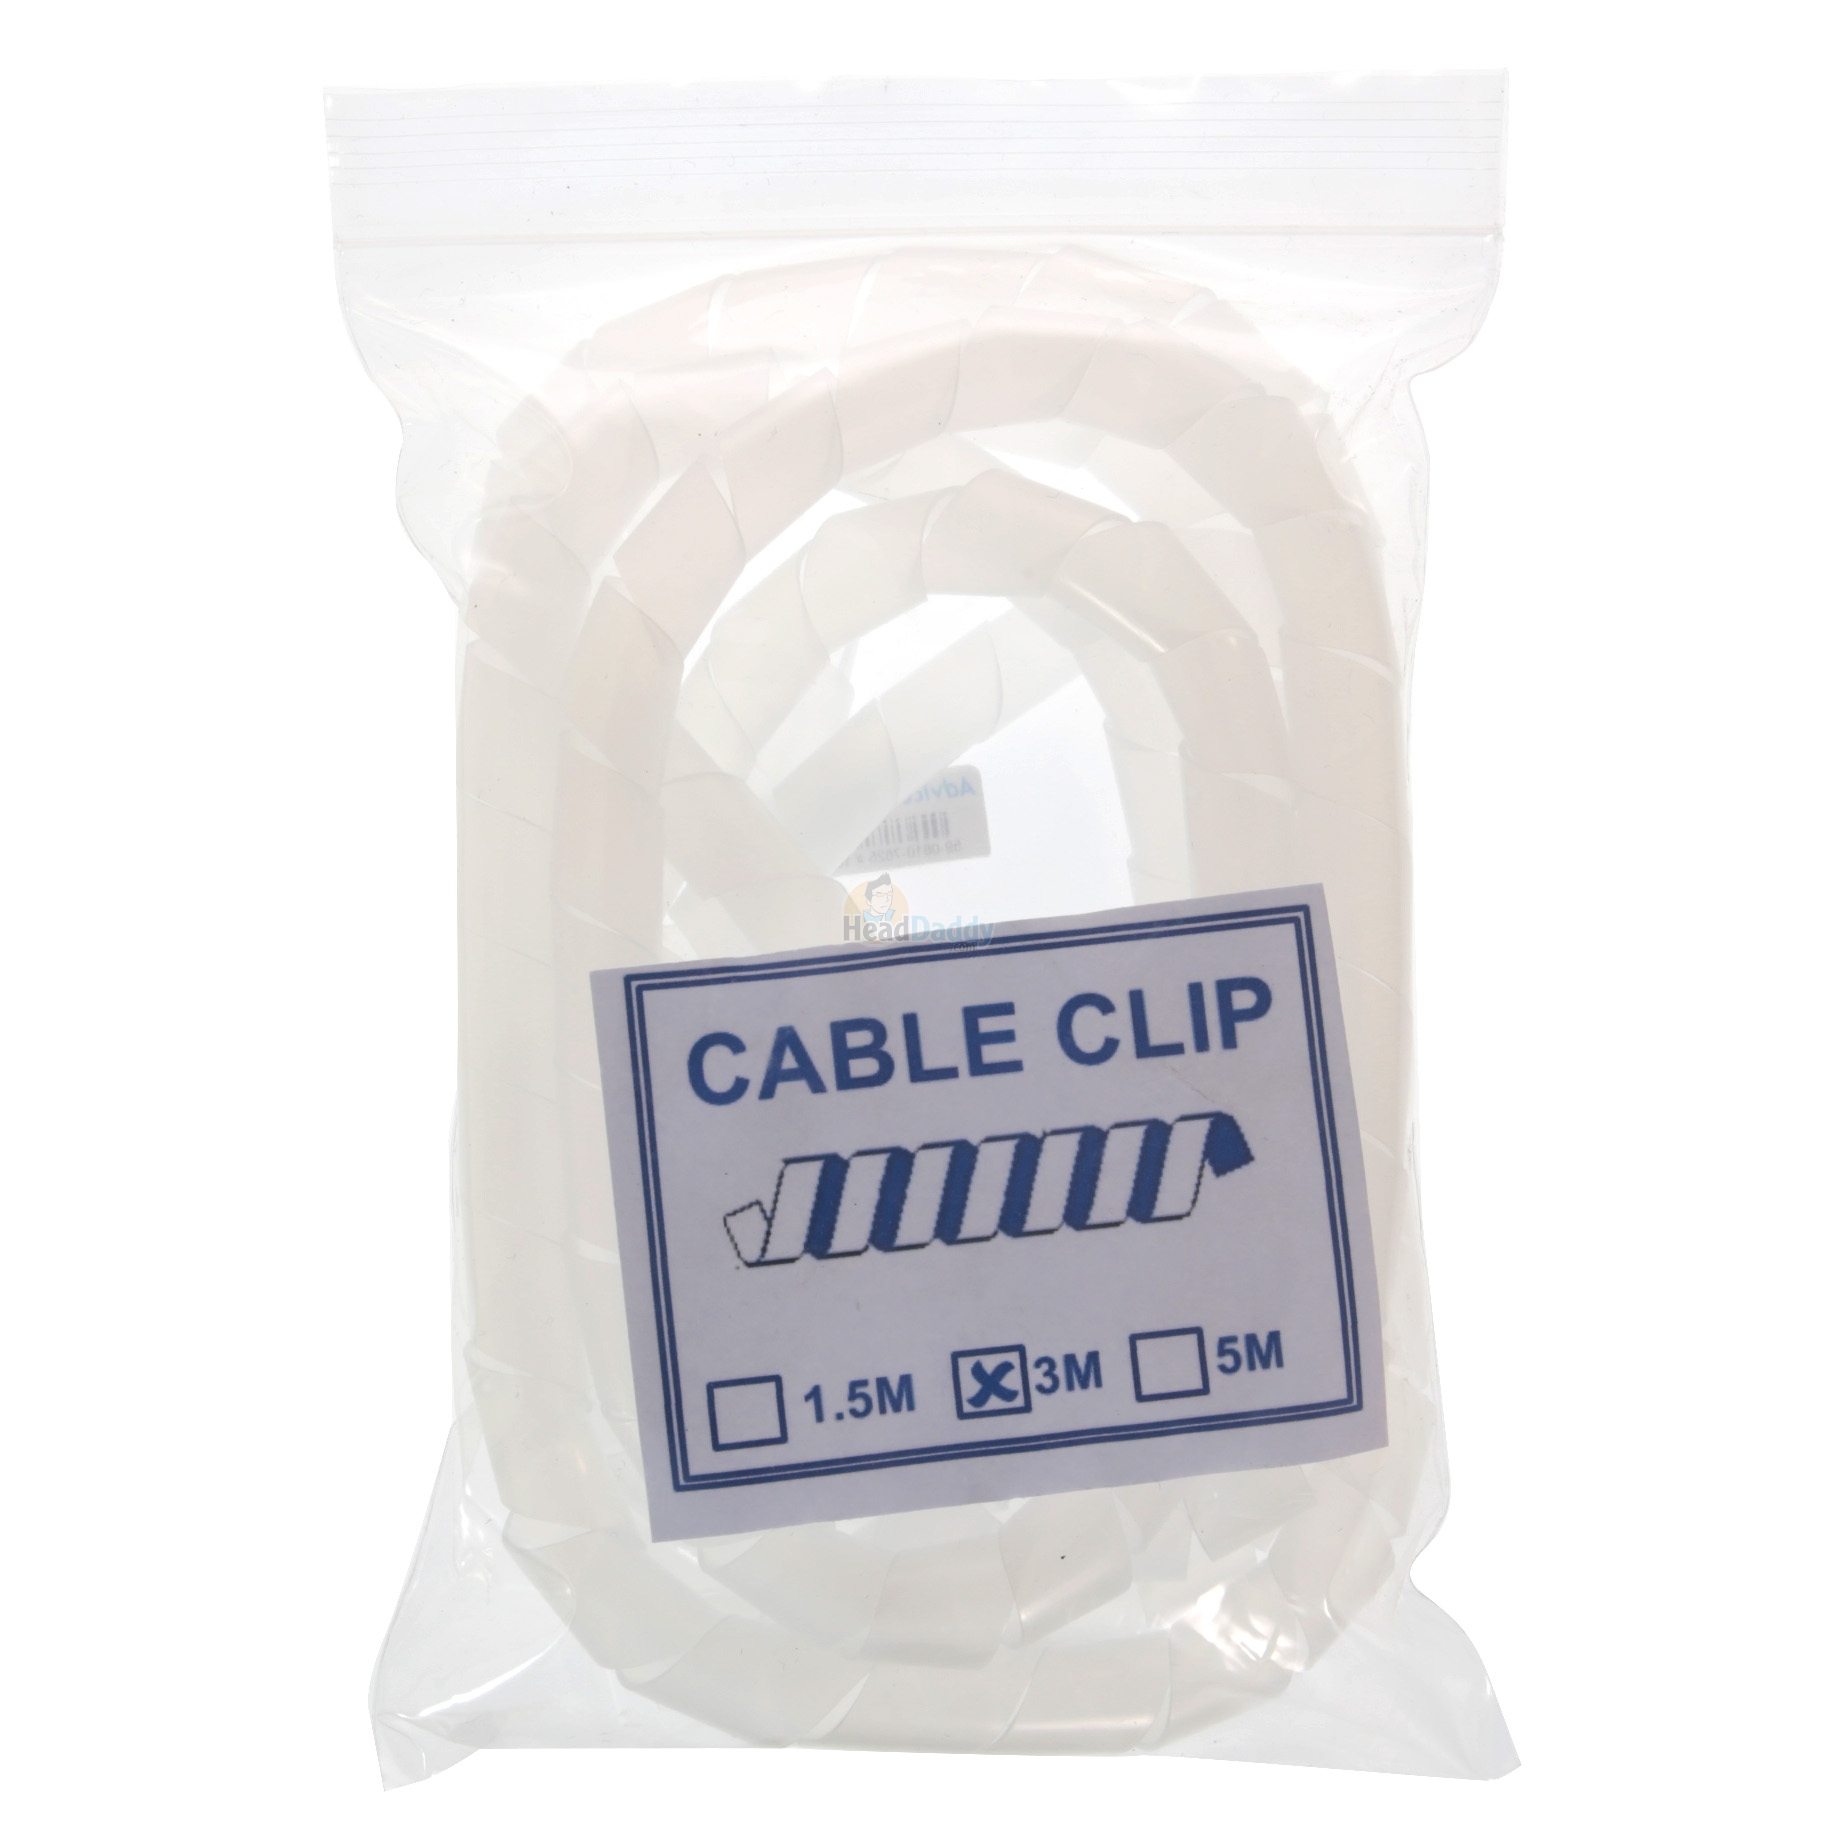 Cable CLIP 3M White